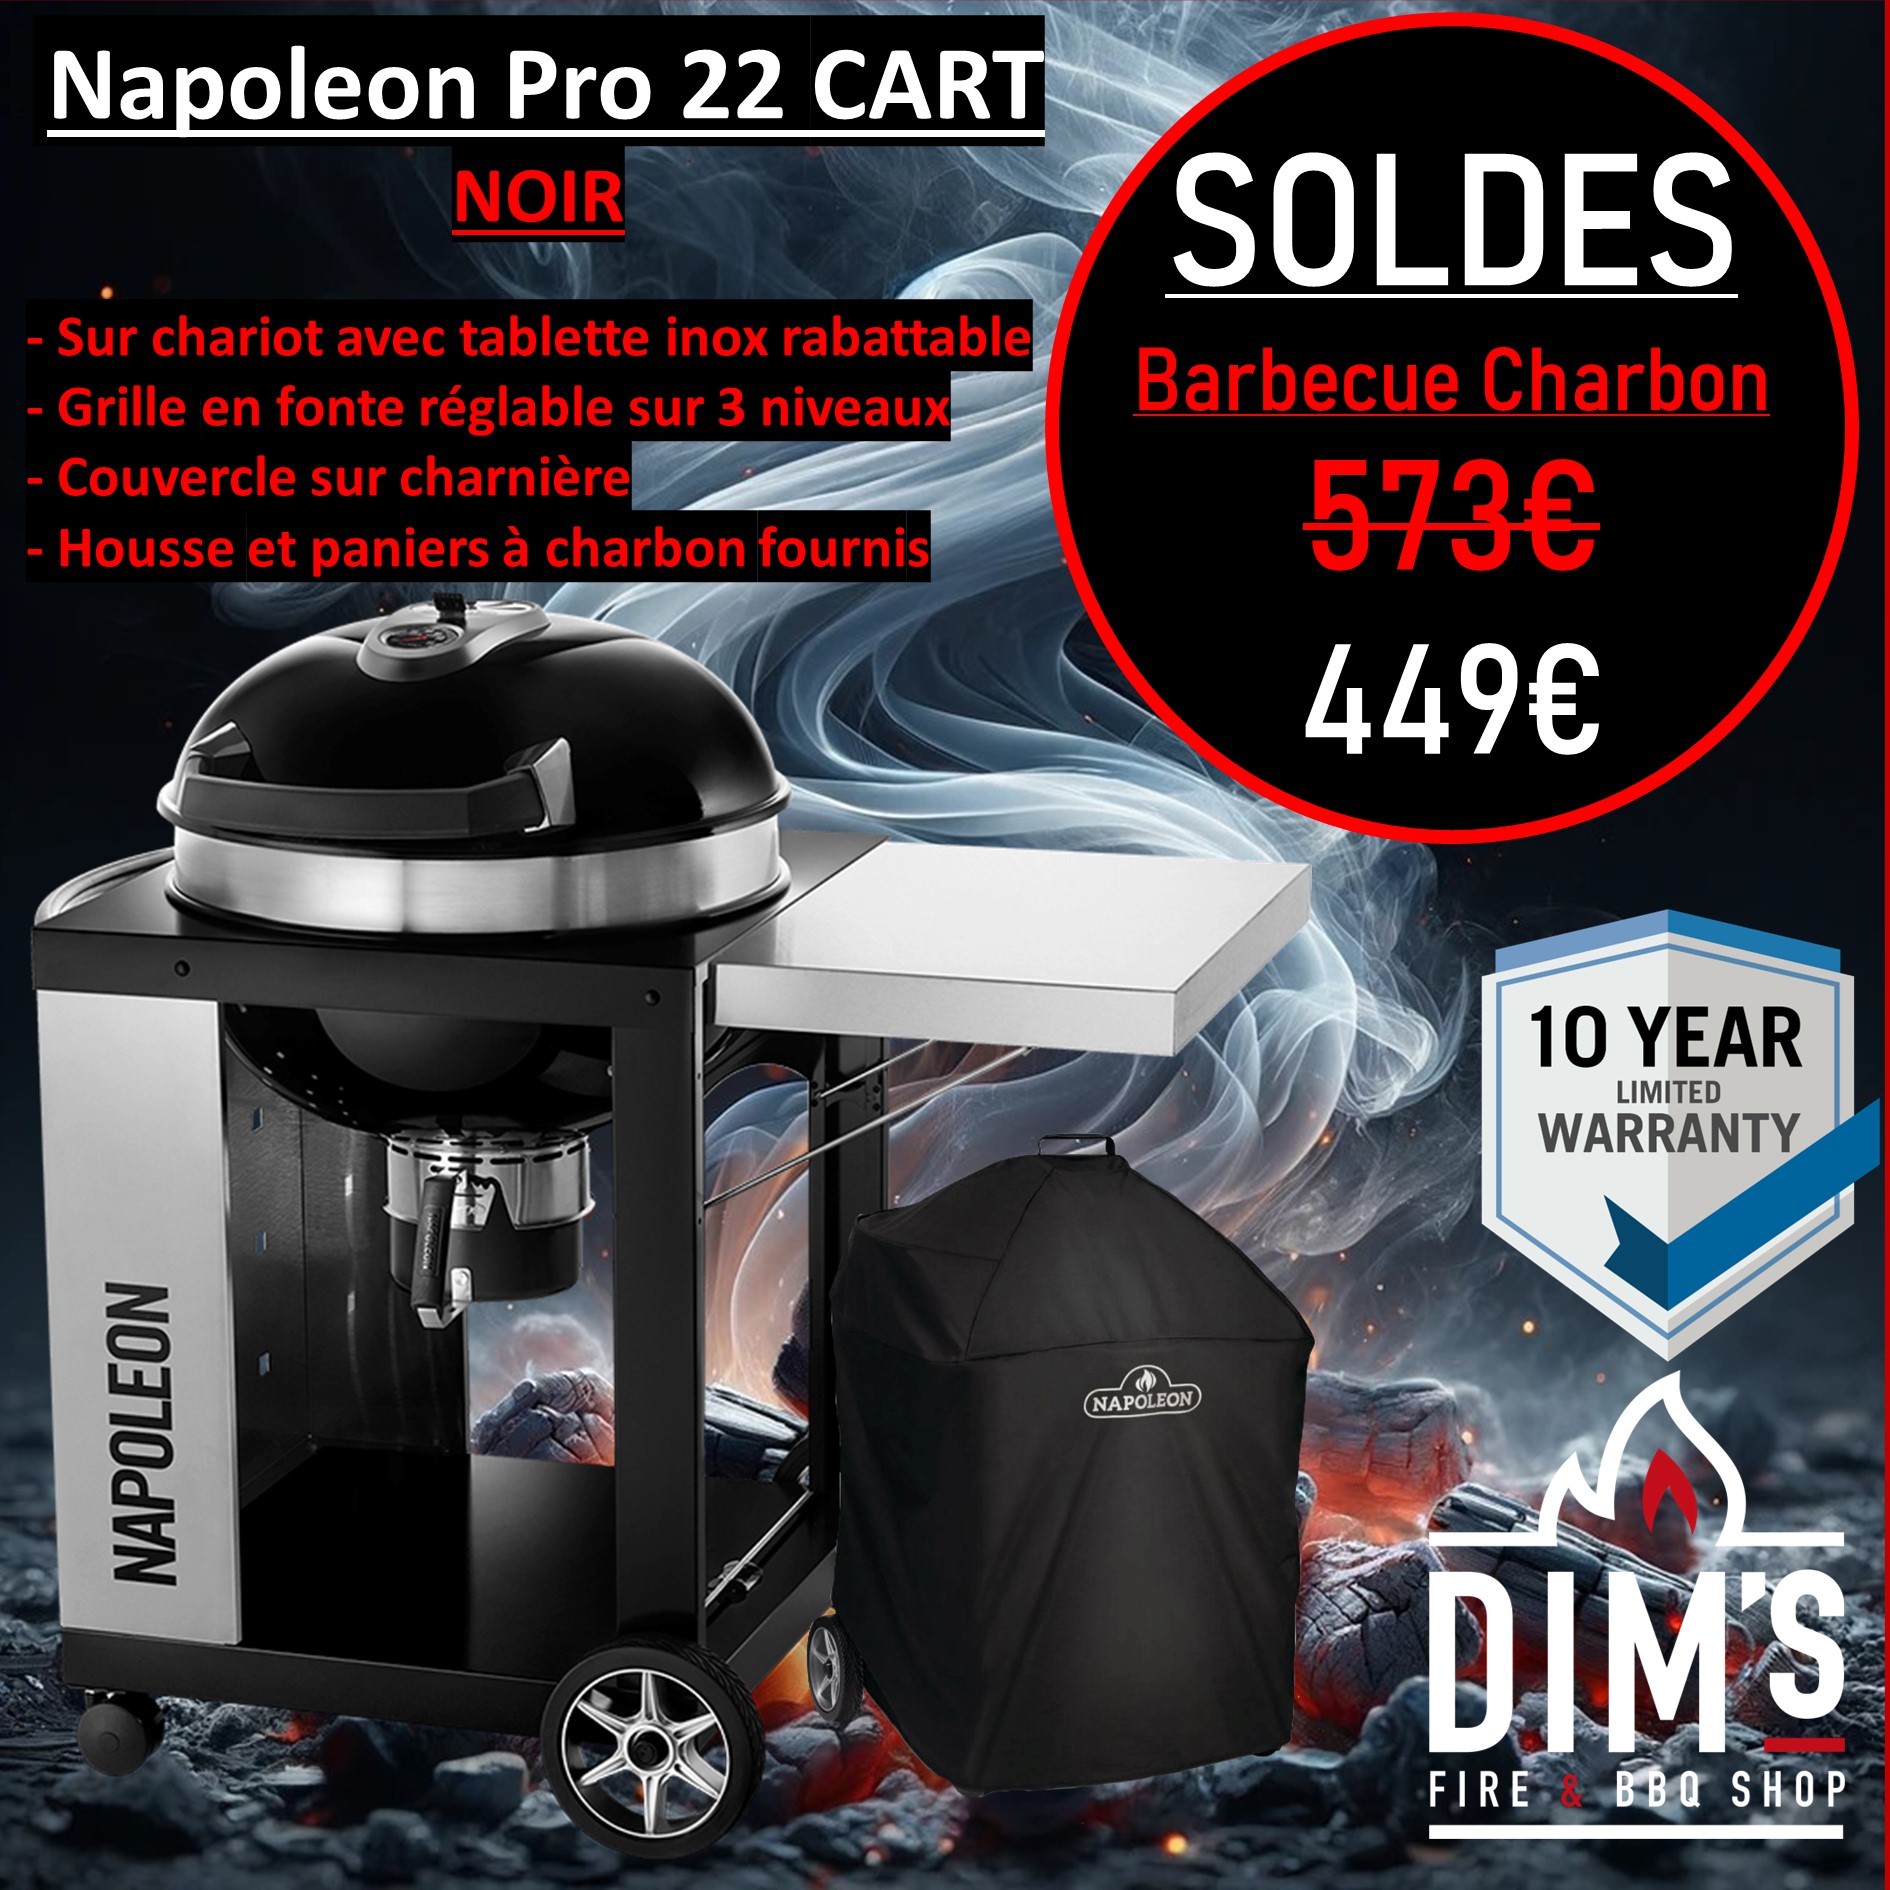 Napoleon Pro 22 Cart - Dim's Fire BBQ Shop